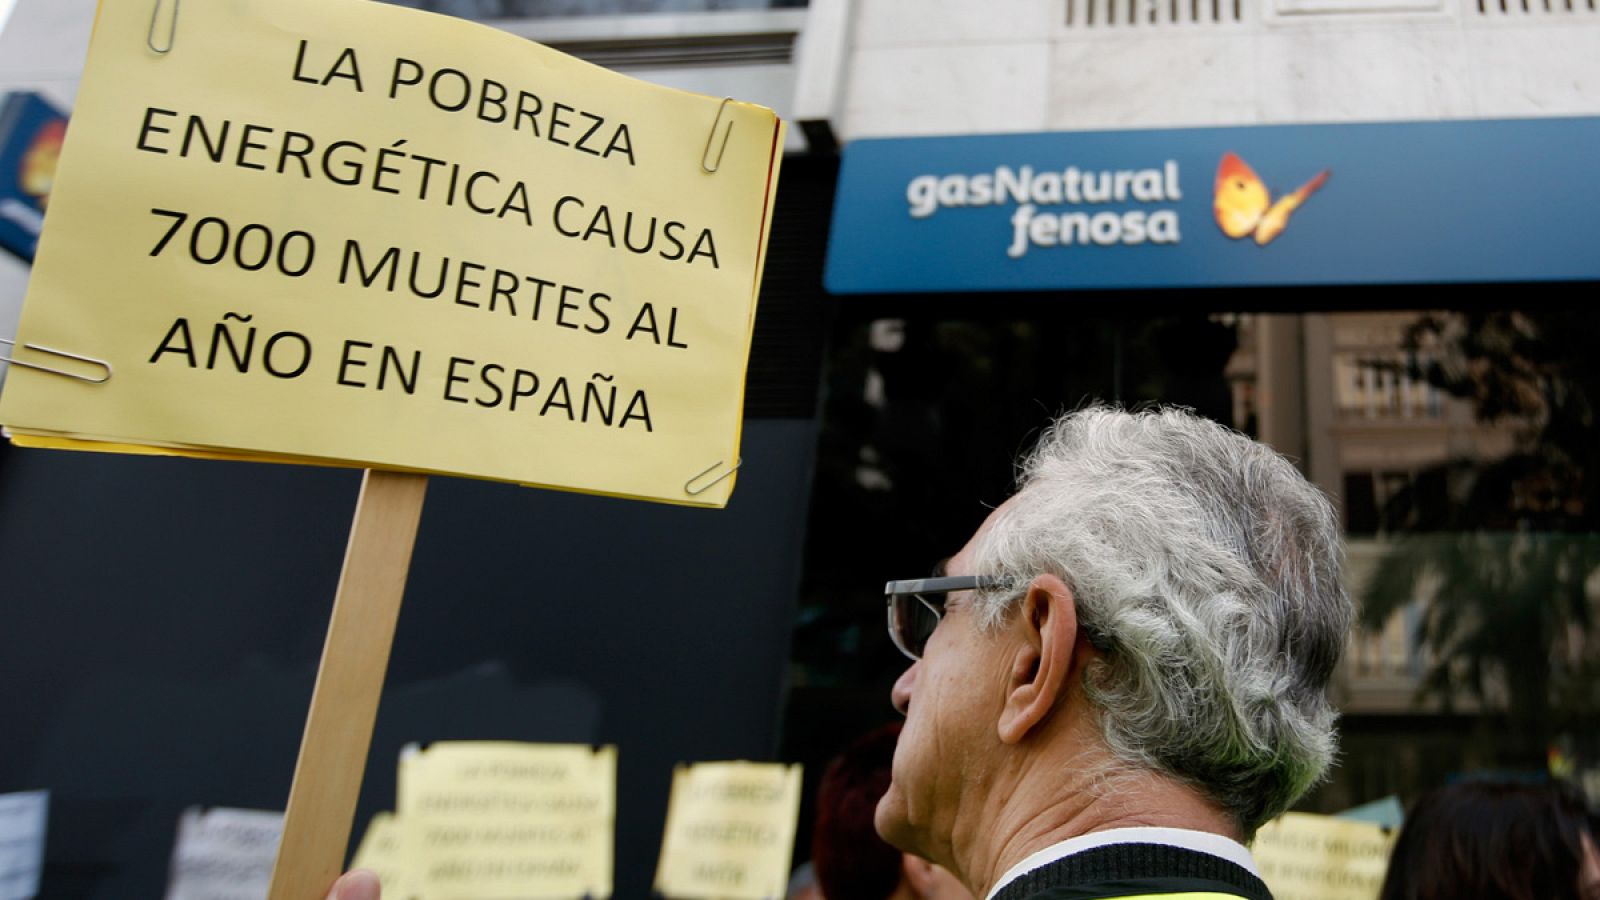 Concentración ante la puerta de Gas Natural Fenosa de Valencia en protesta por la pobreza energética (Archivo)